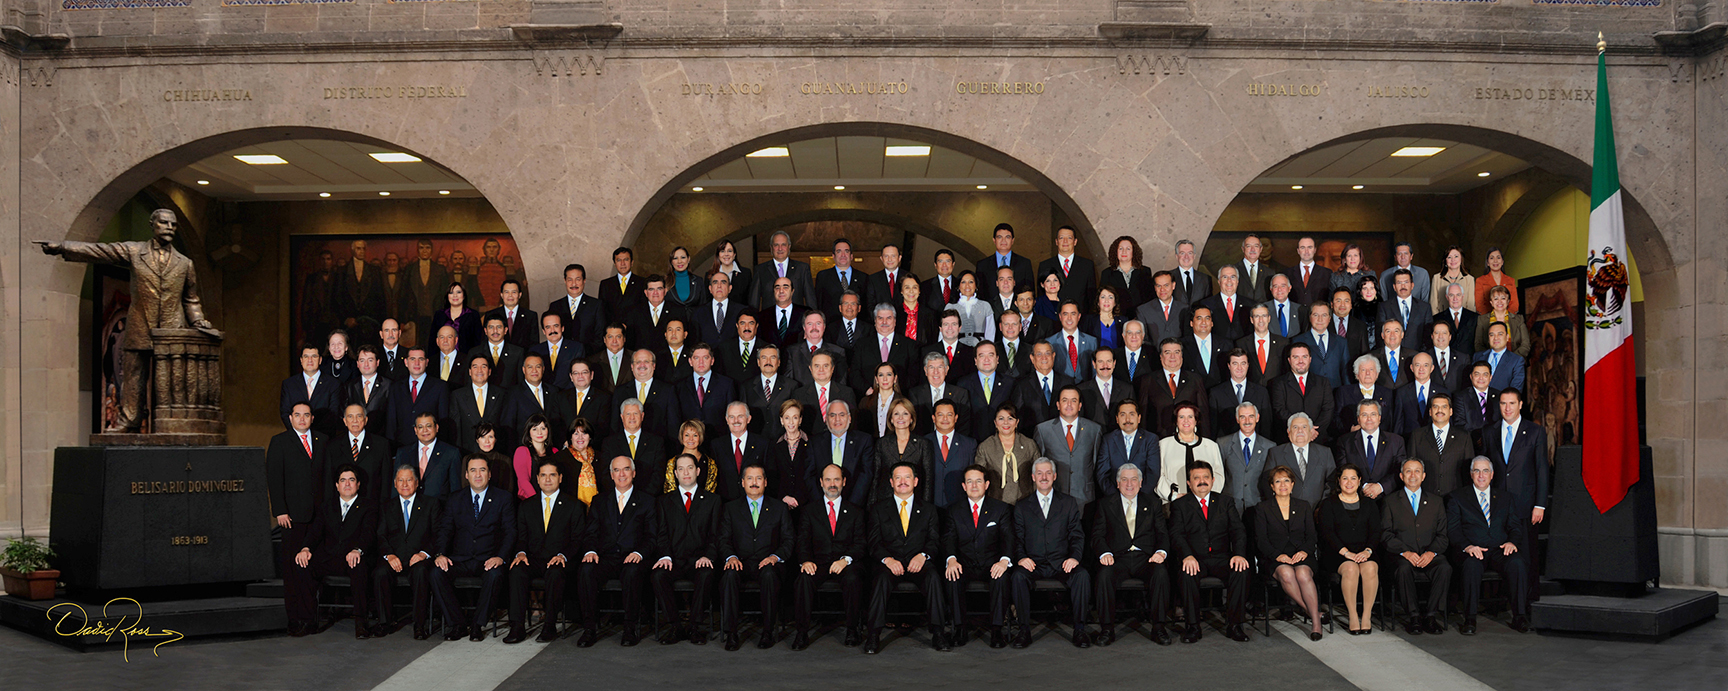 Senado de la República LIX Legislatura - David Ross - Fotografo de Grupos